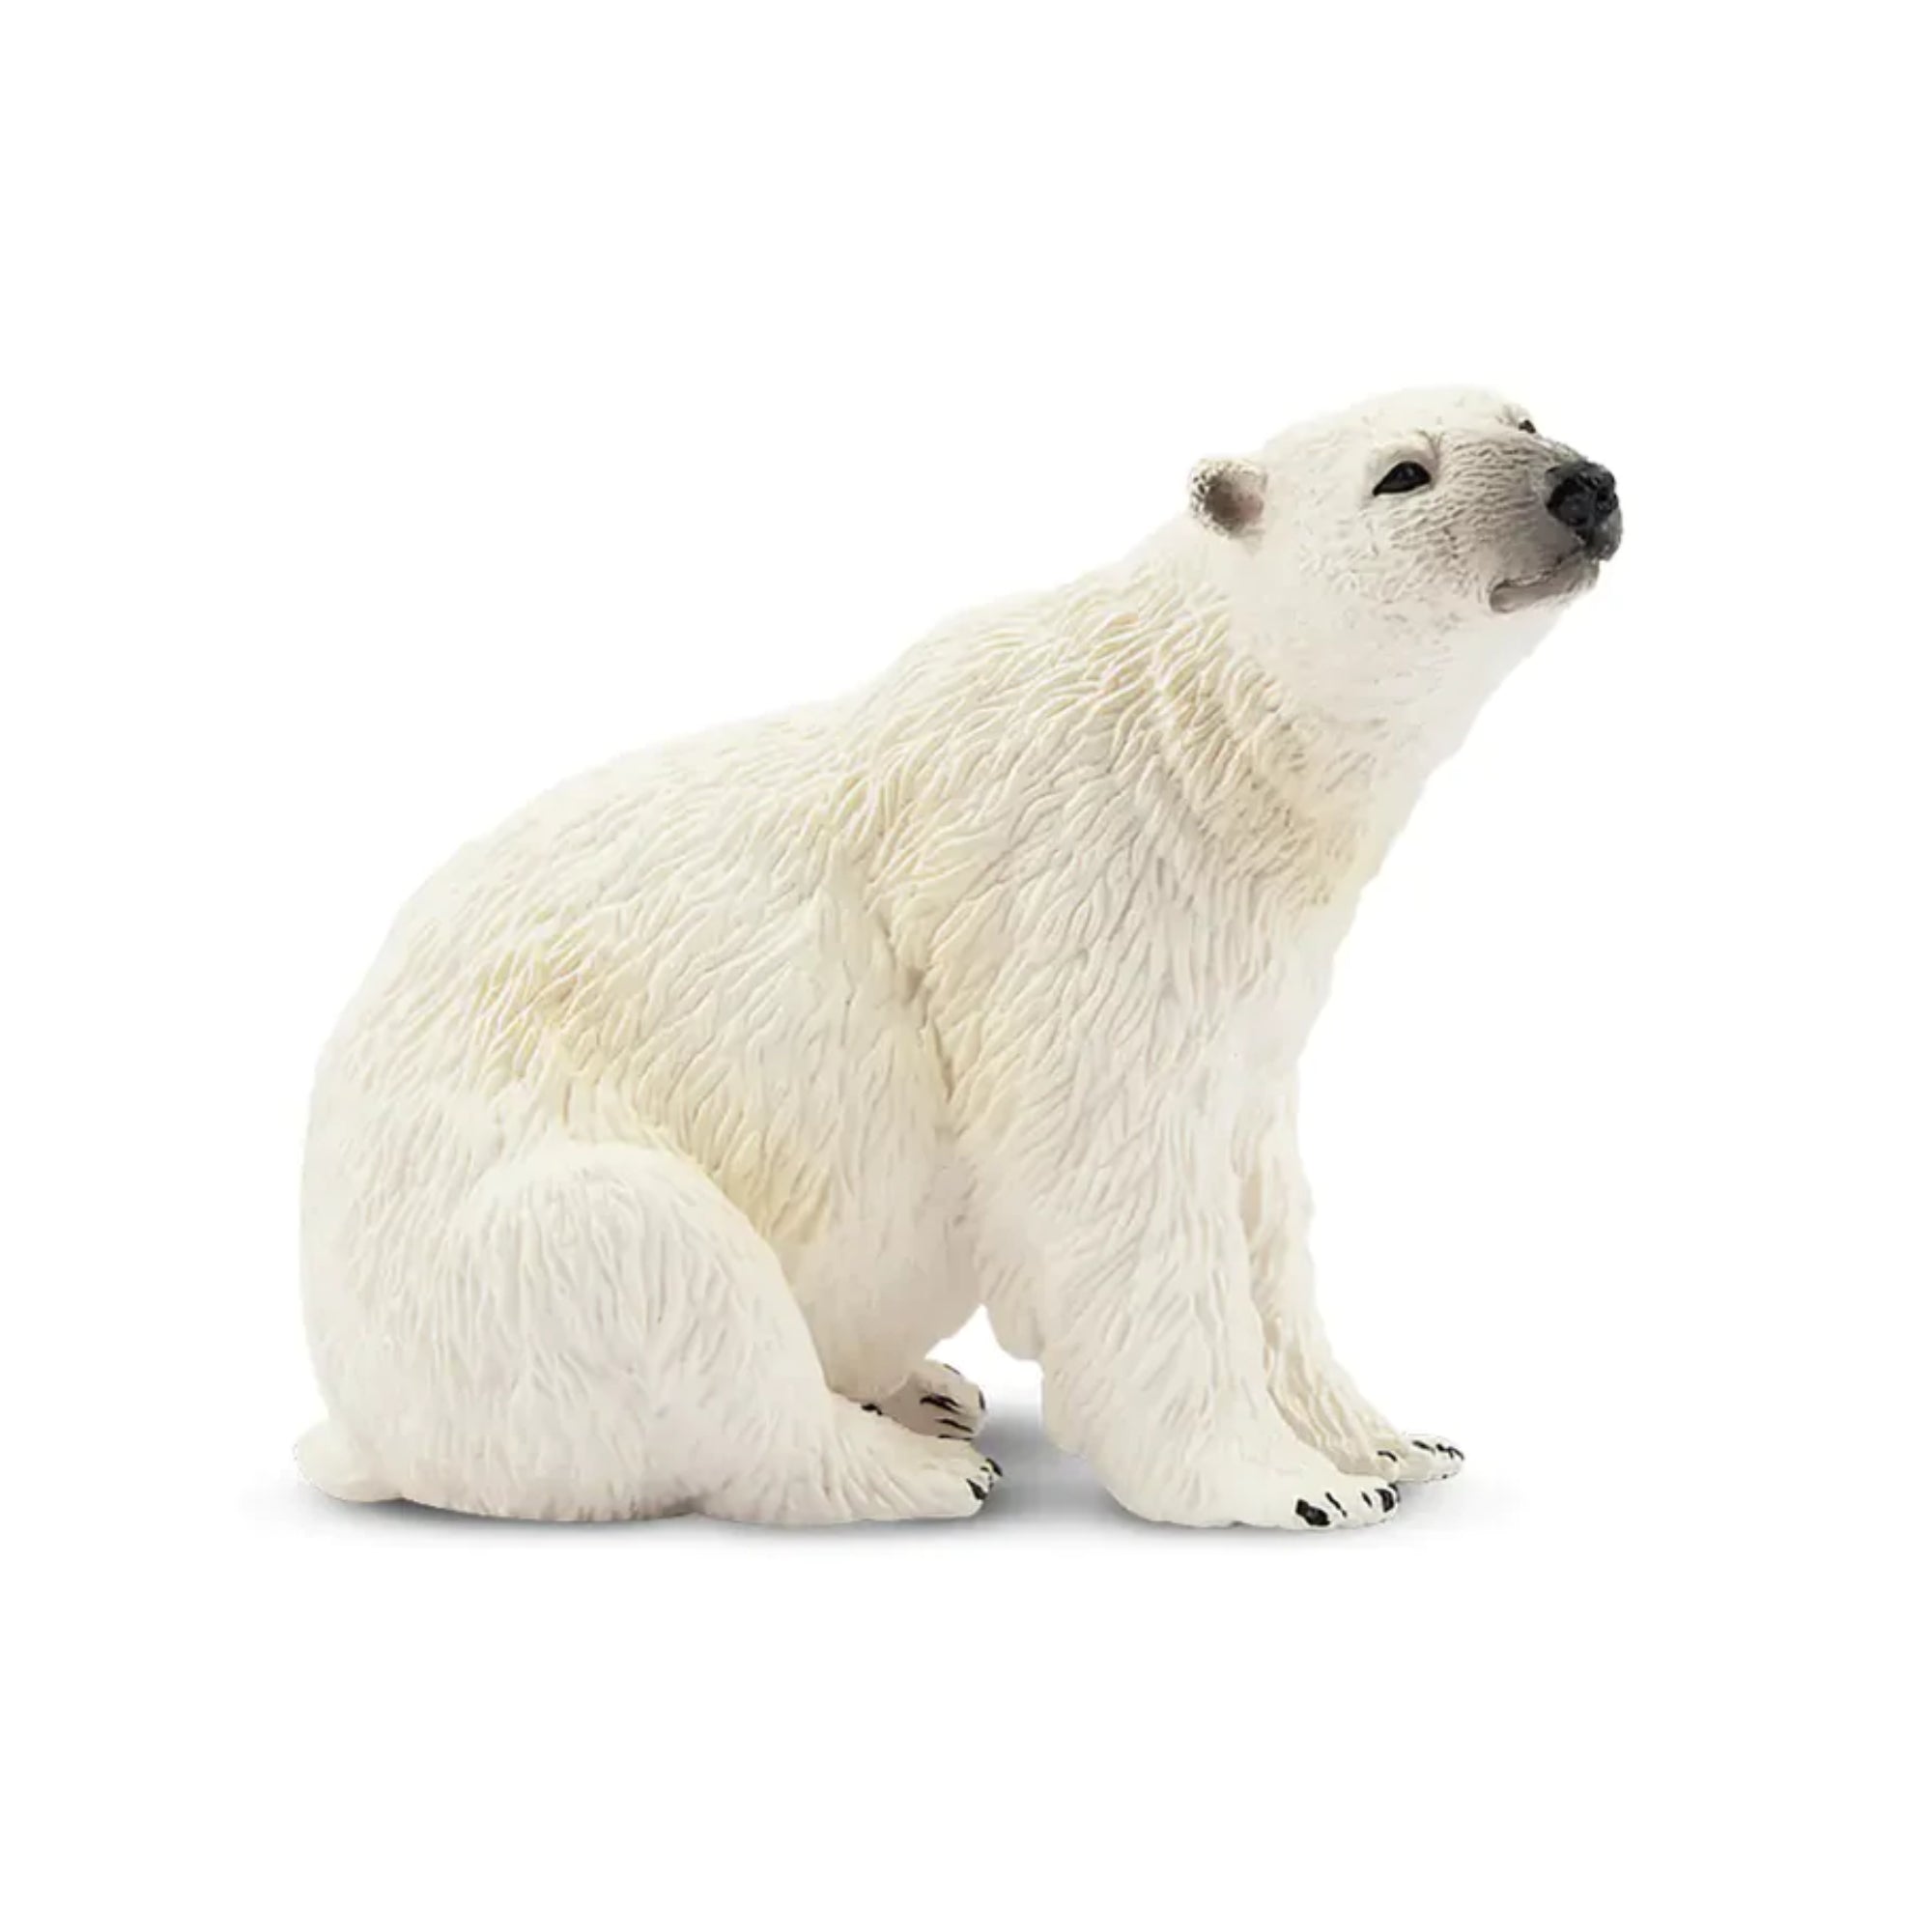 Toymany Female Polar Bear Figurine Toy